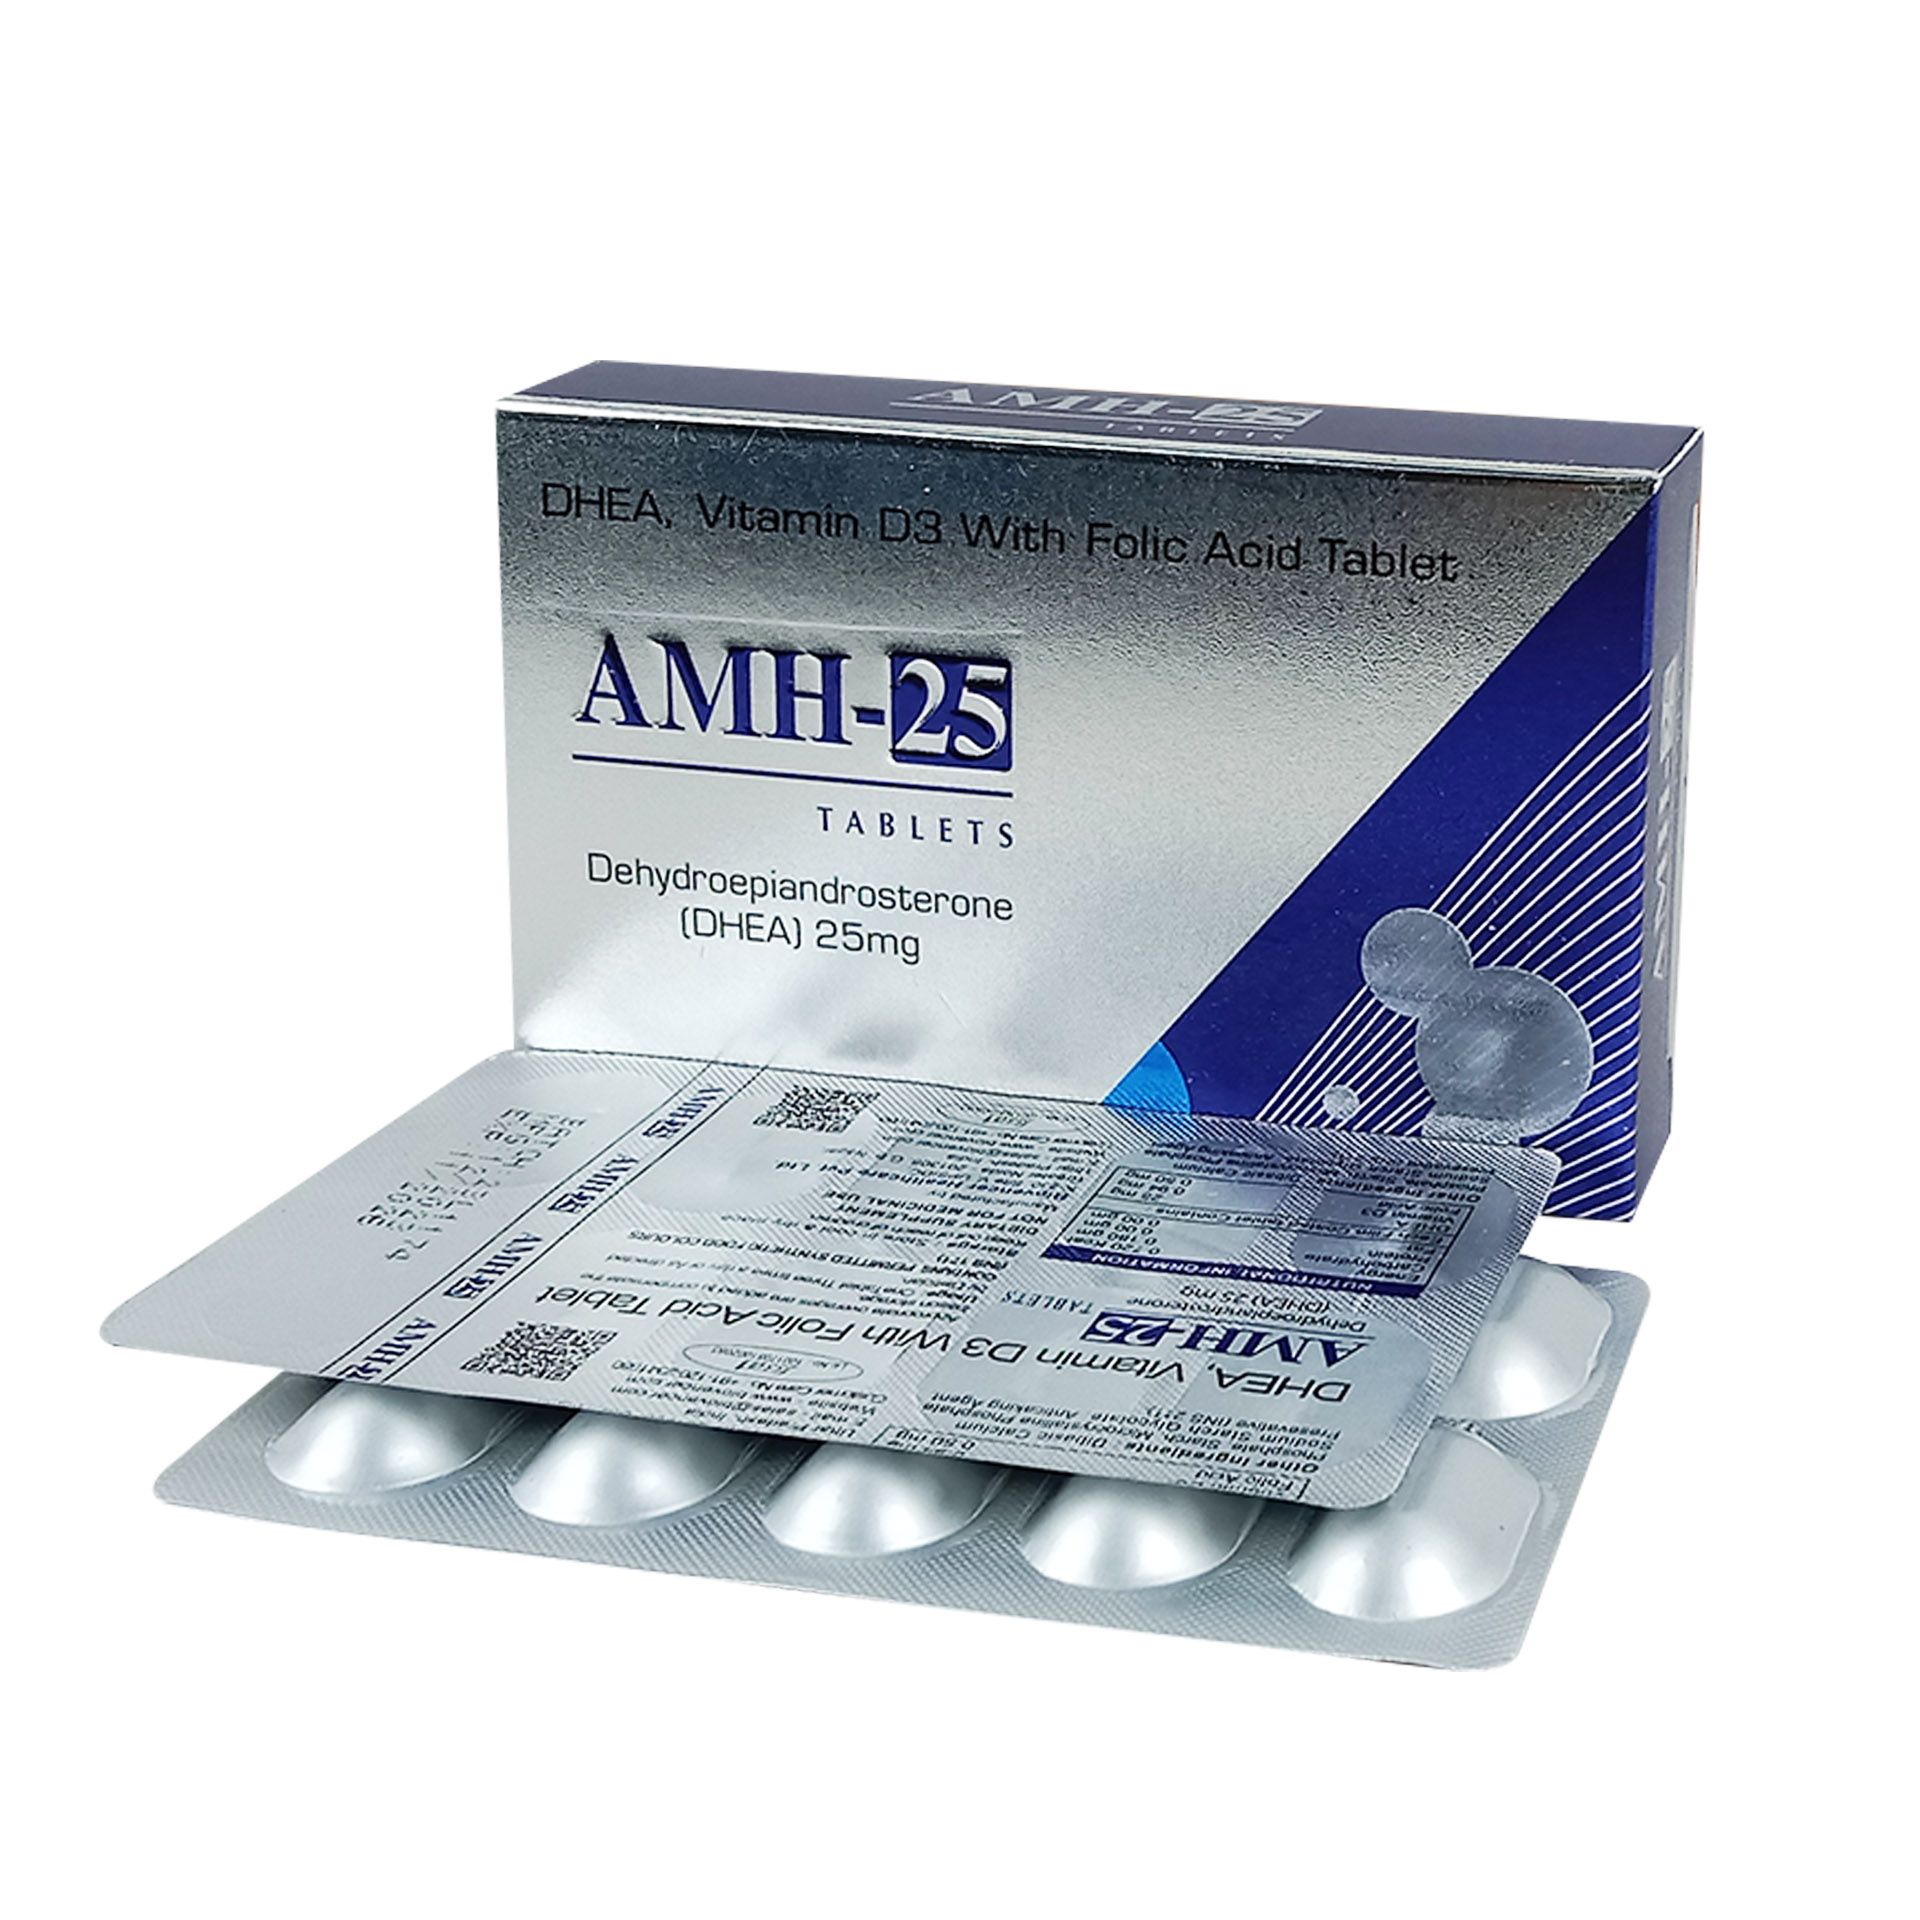 AMH-25 (Dhea) 25mg Tablet